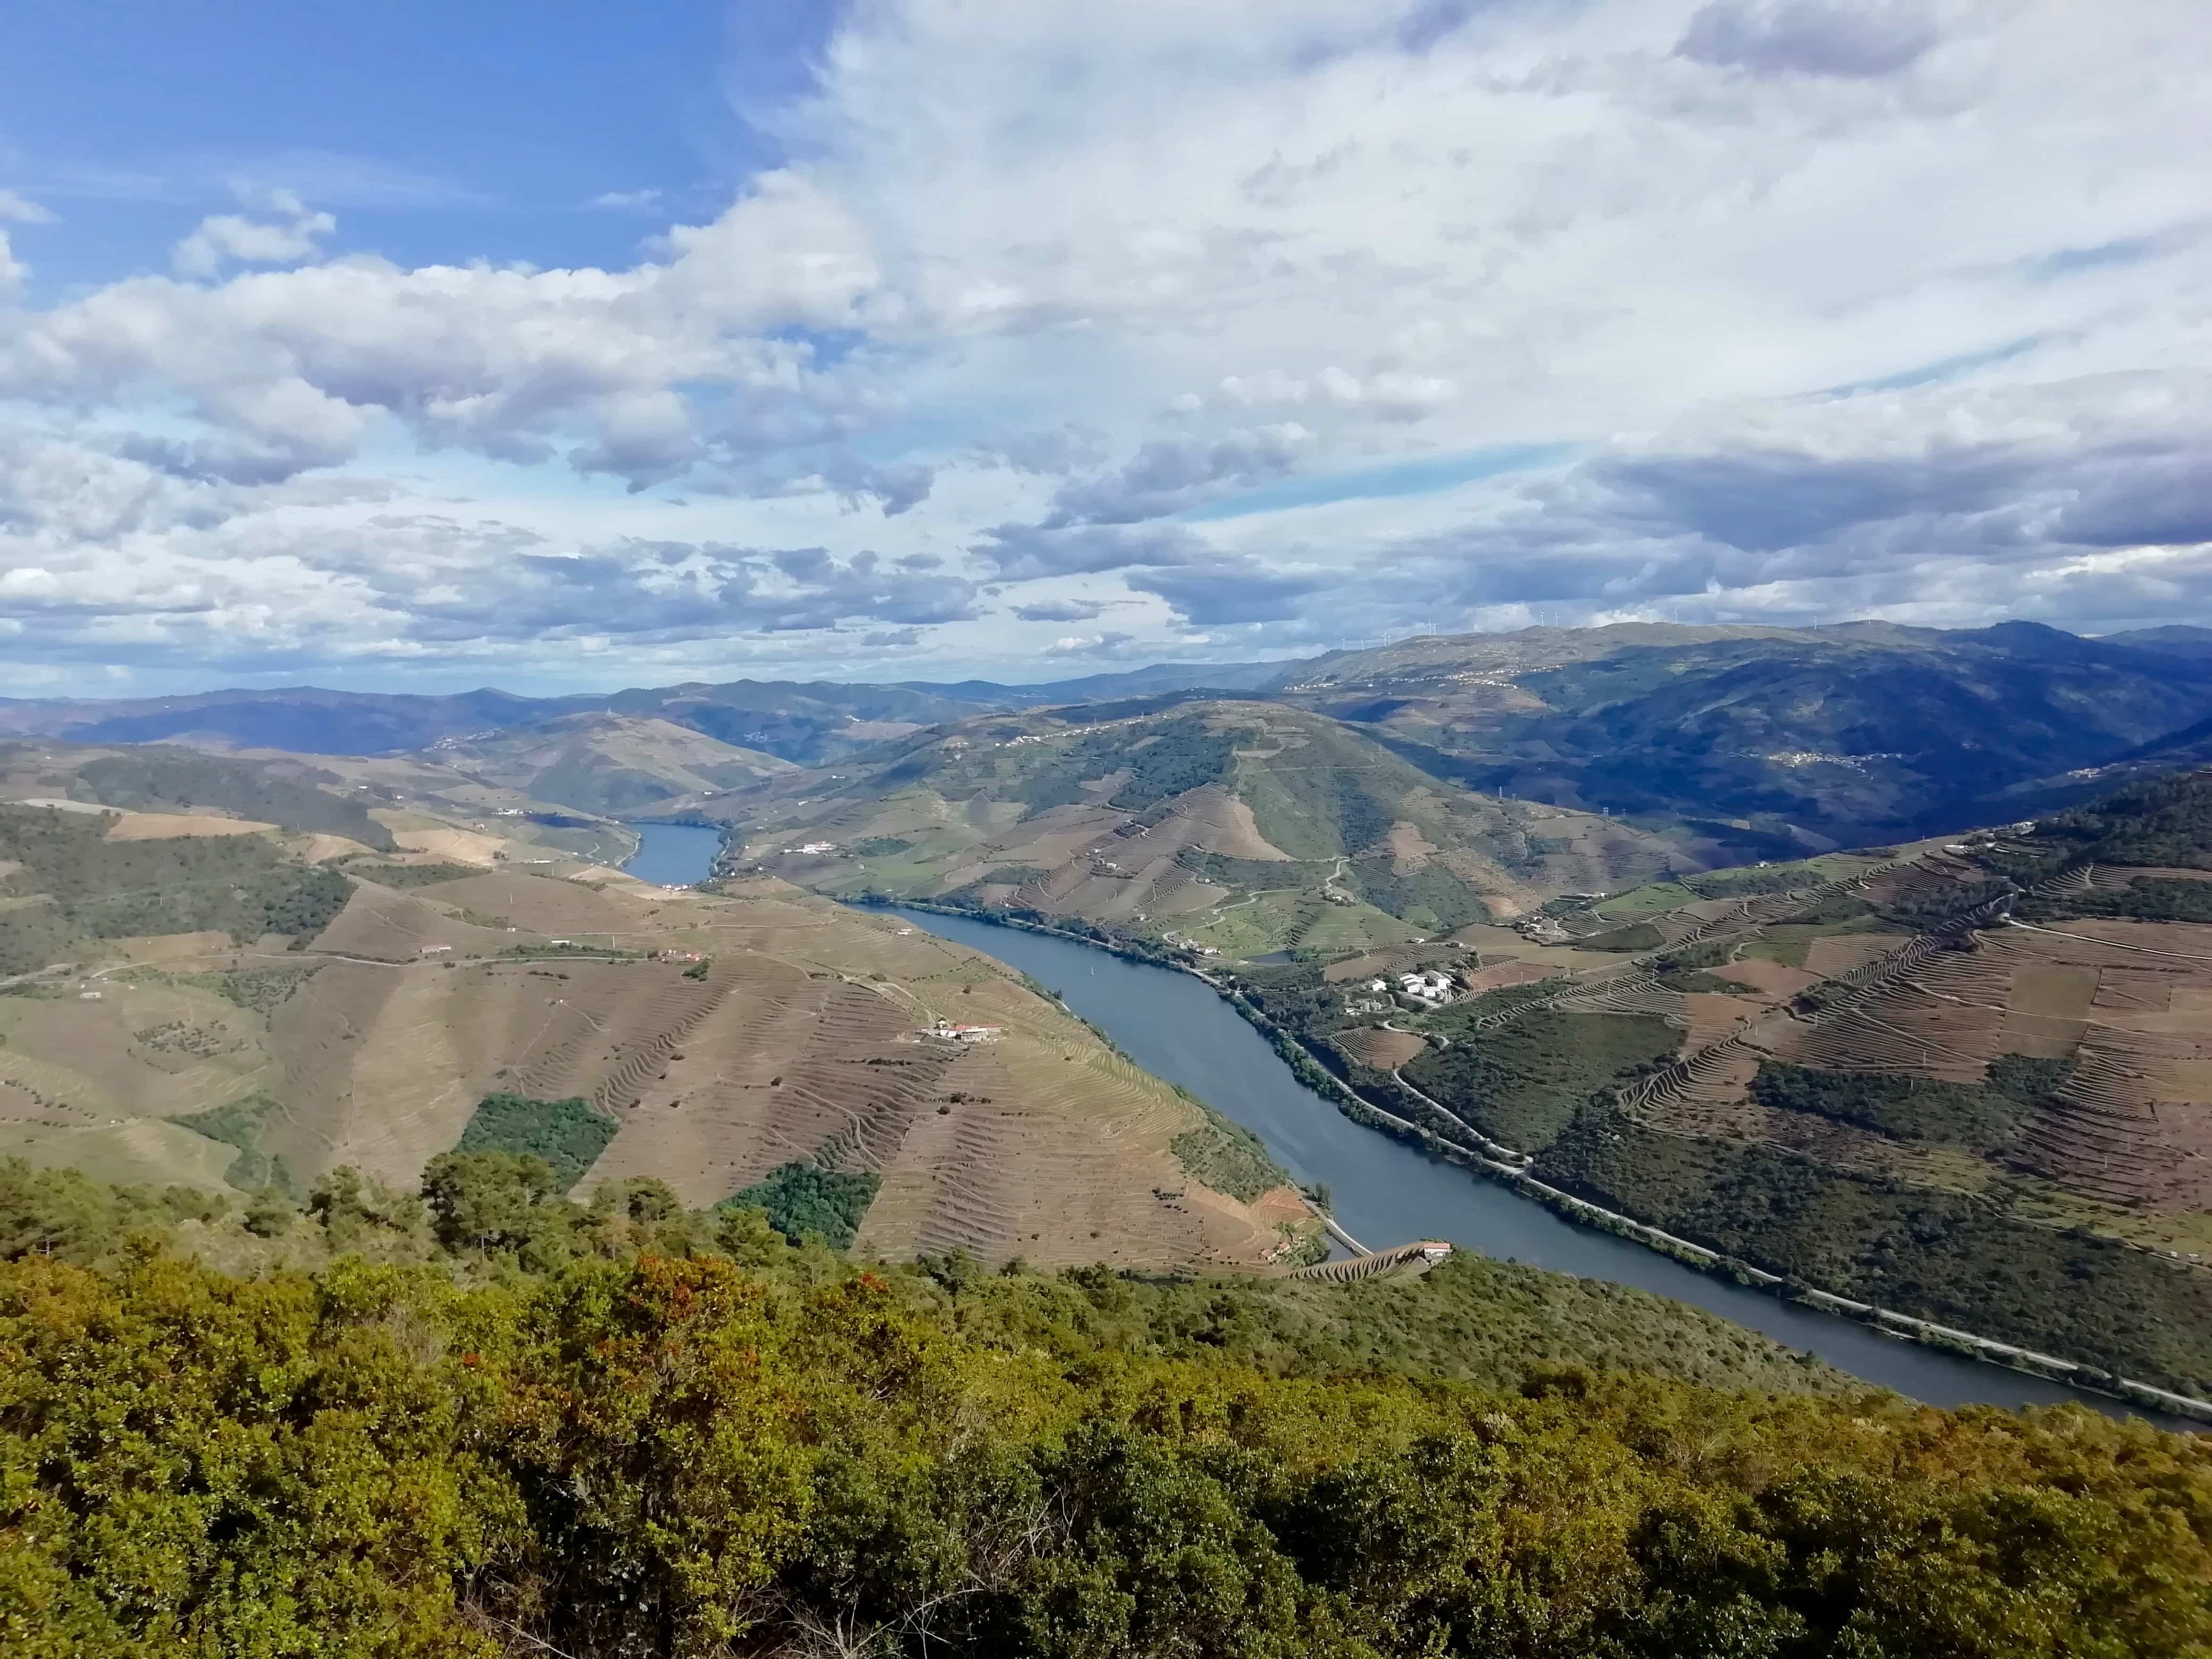 View of the Douro Valley from Miradouro de Sao Leonardo viewpoint